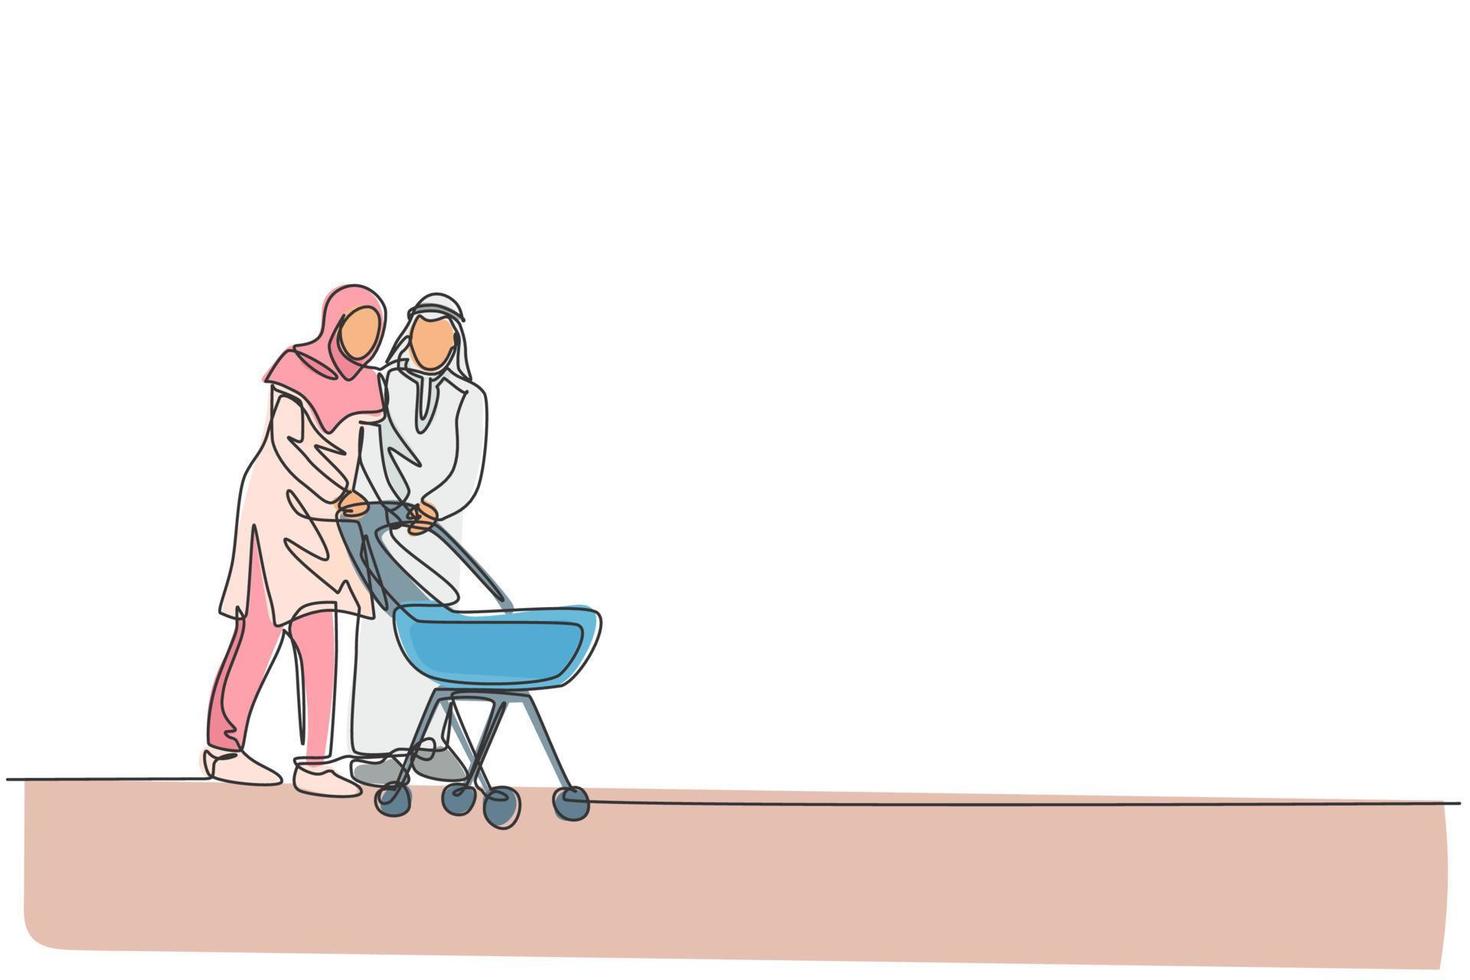 un disegno a tratteggio di giovani madre e padre arabi camminano e spingono il carrello per bambini all'illustrazione vettoriale del parco all'aperto. concetto di genitorialità famiglia felice musulmana islamica. disegno di disegno a linea continua